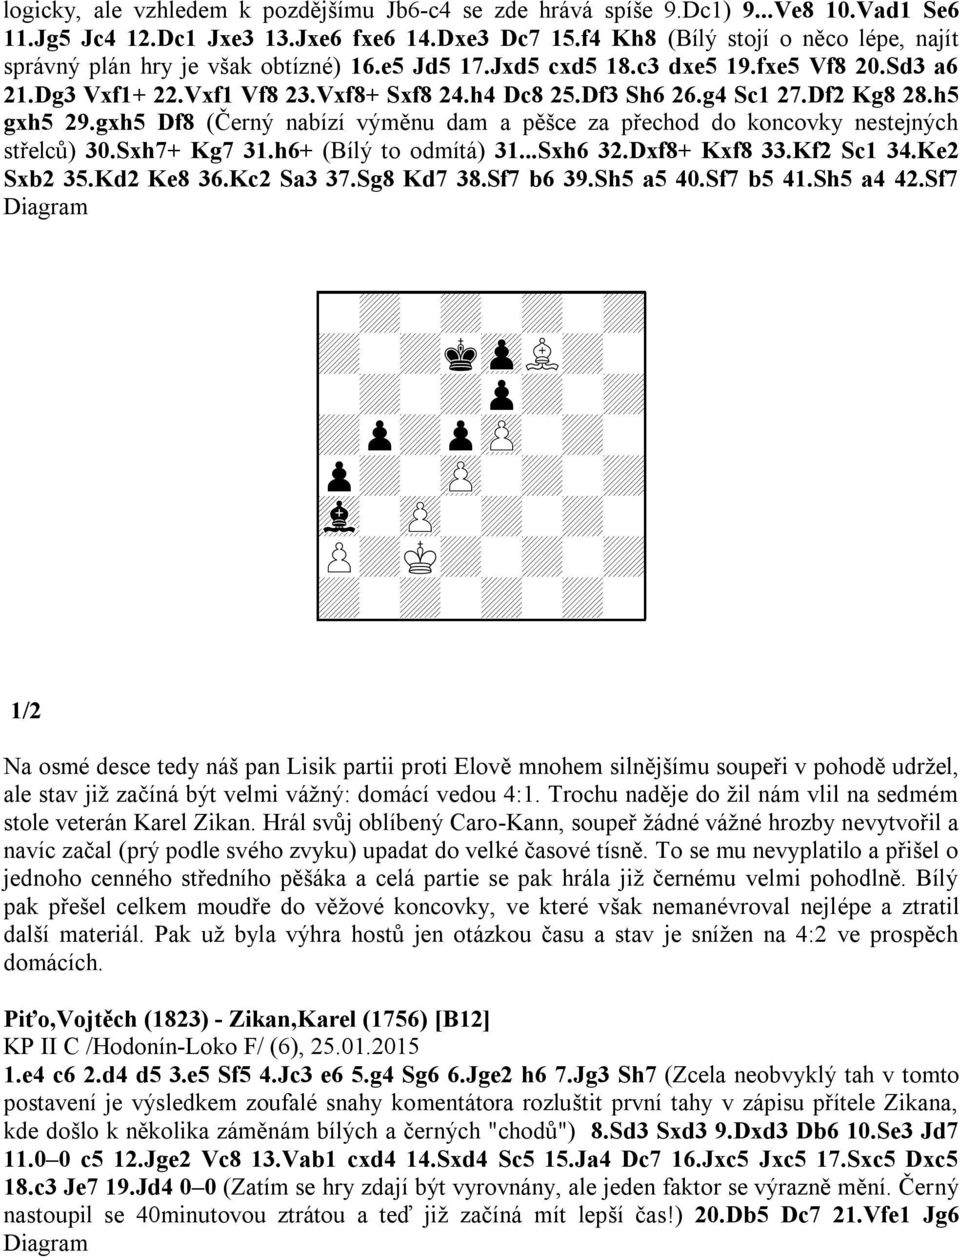 g4 Sc1 27.Df2 Kg8 28.h5 gxh5 29.gxh5 Df8 (Černý nabízí výměnu dam a pěšce za přechod do koncovky nestejných střelců) 30.Sxh7+ Kg7 31.h6+ (Bílý to odmítá) 31...Sxh6 32.Dxf8+ Kxf8 33.Kf2 Sc1 34.